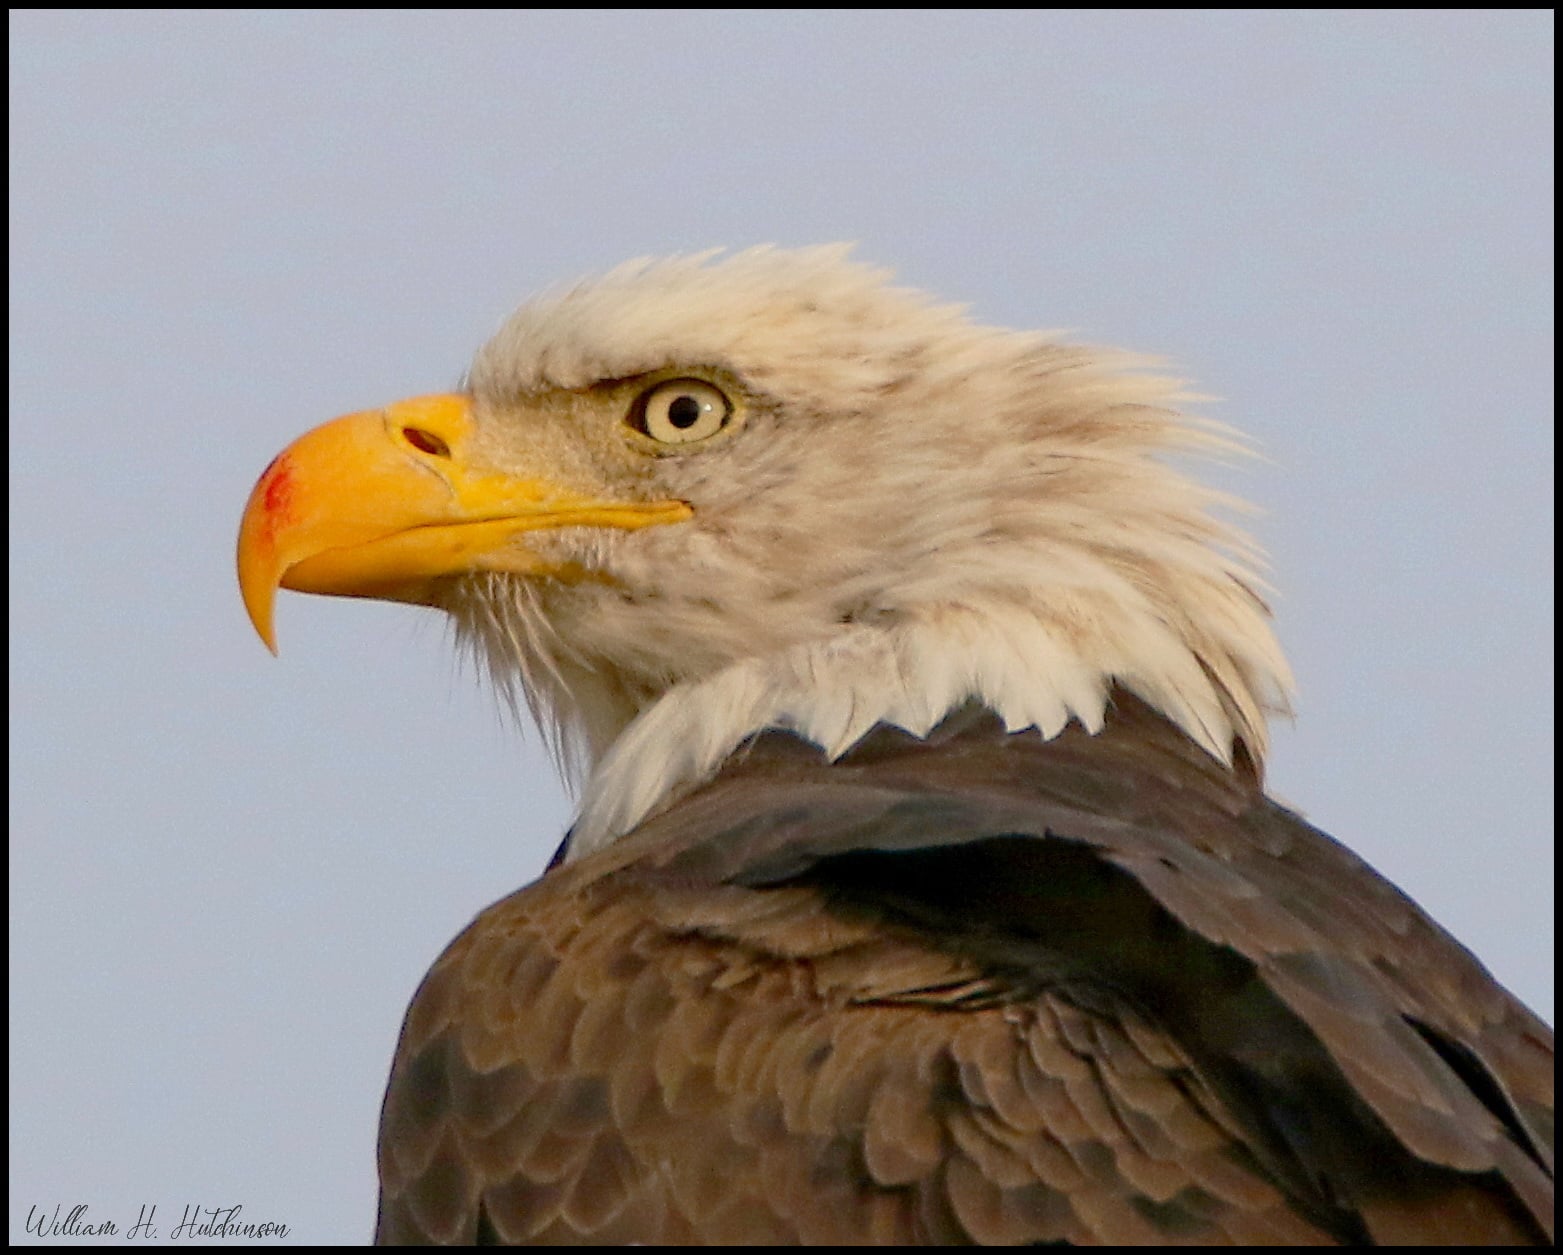 Bill Hutchinson photo of eagle